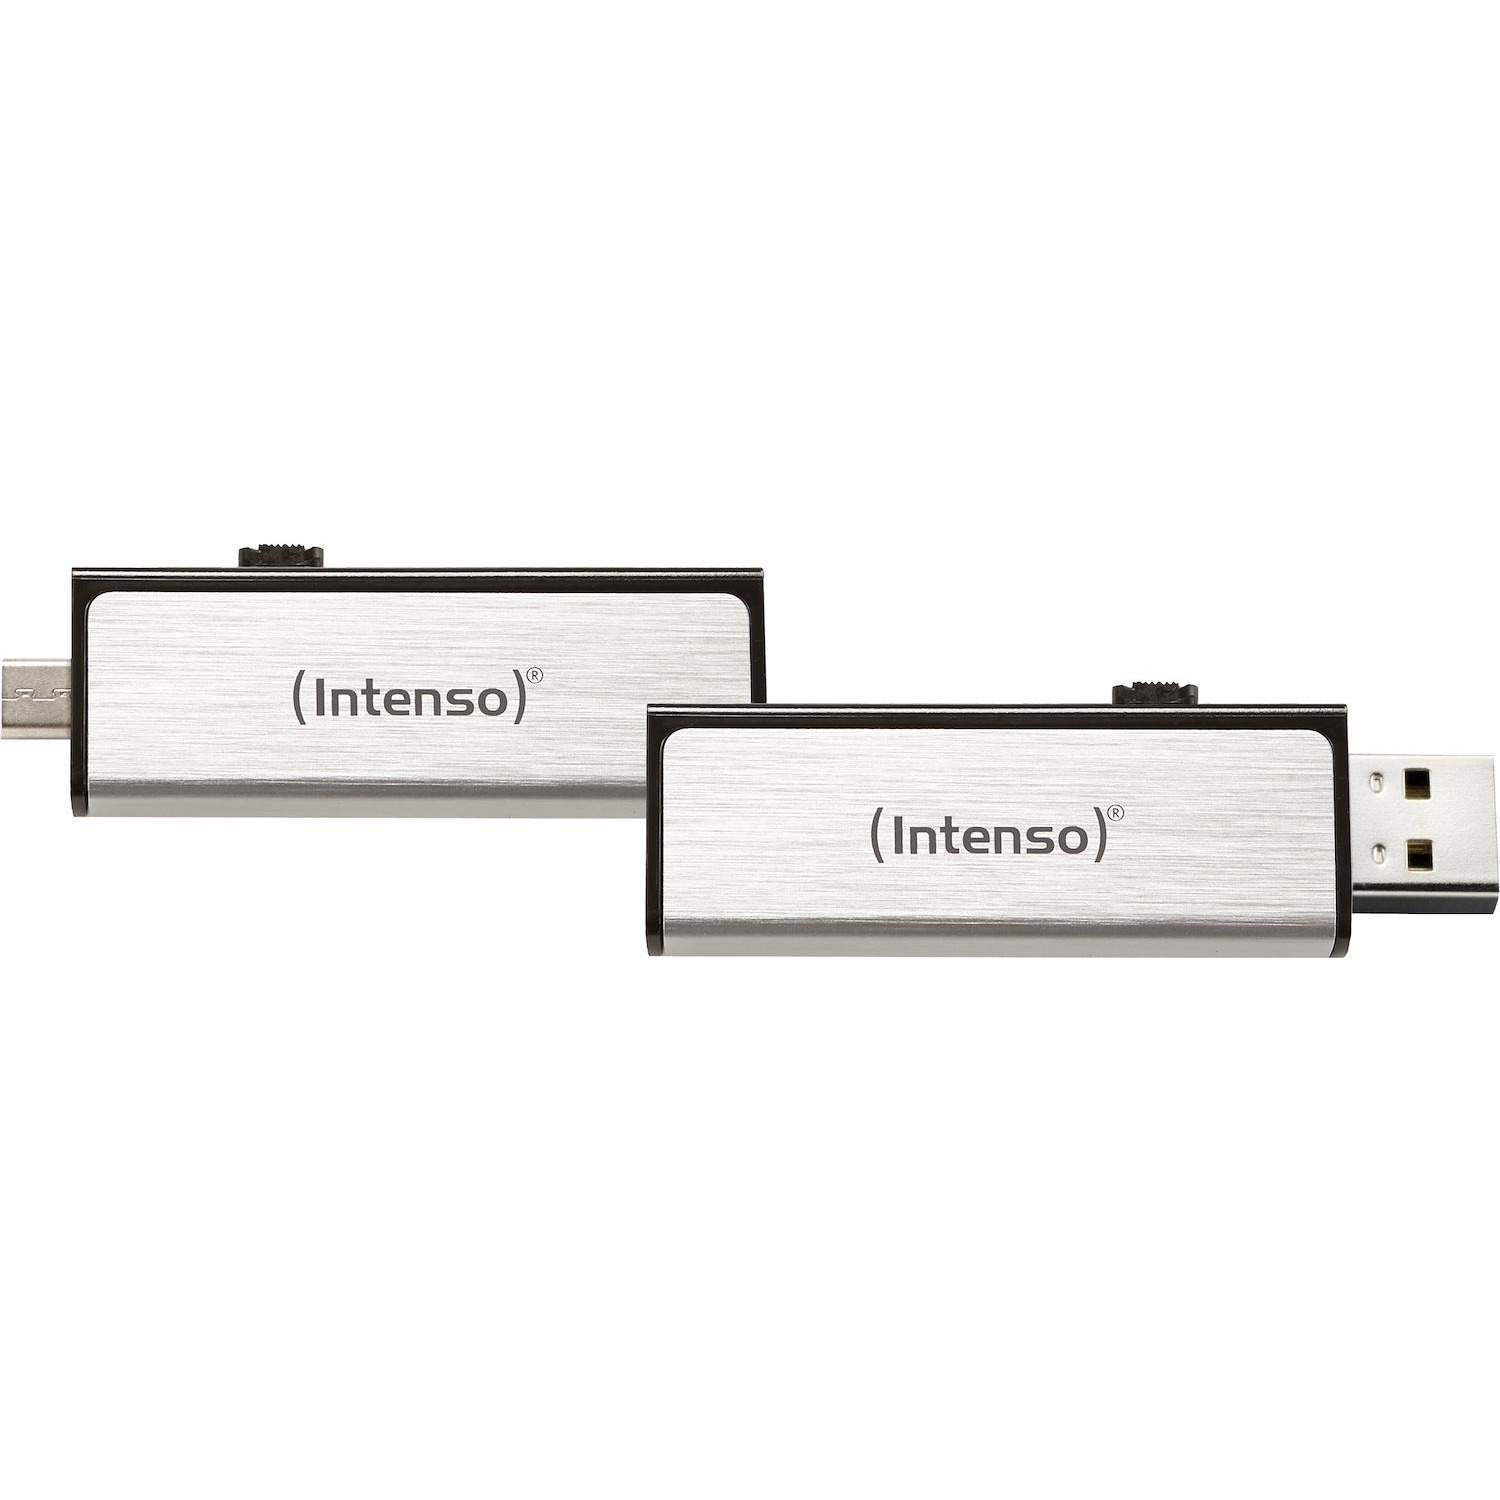 Immagine per Memoria USB Intenso Flash 16GB Mobile line OTG da DIMOStore